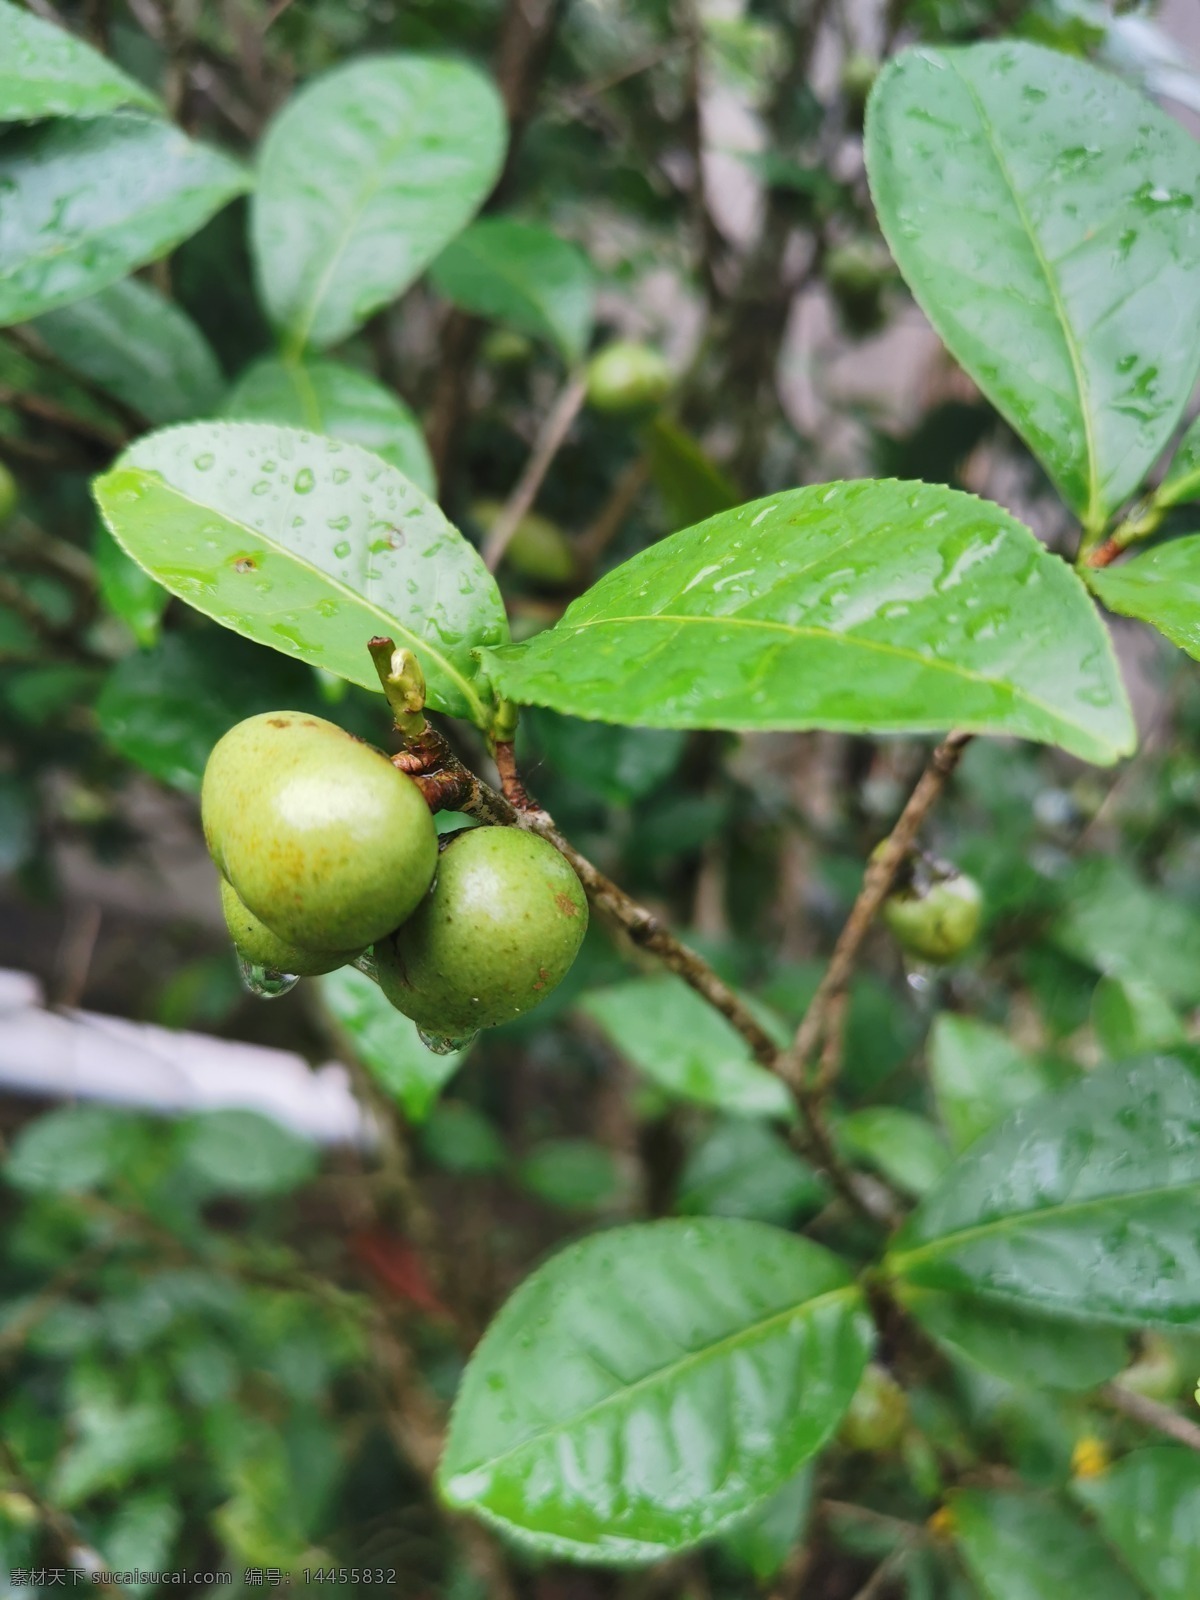 茶油果 茶油 油茶果 茶籽油 植物油 茶树 植物 果实 生物世界 树木树叶